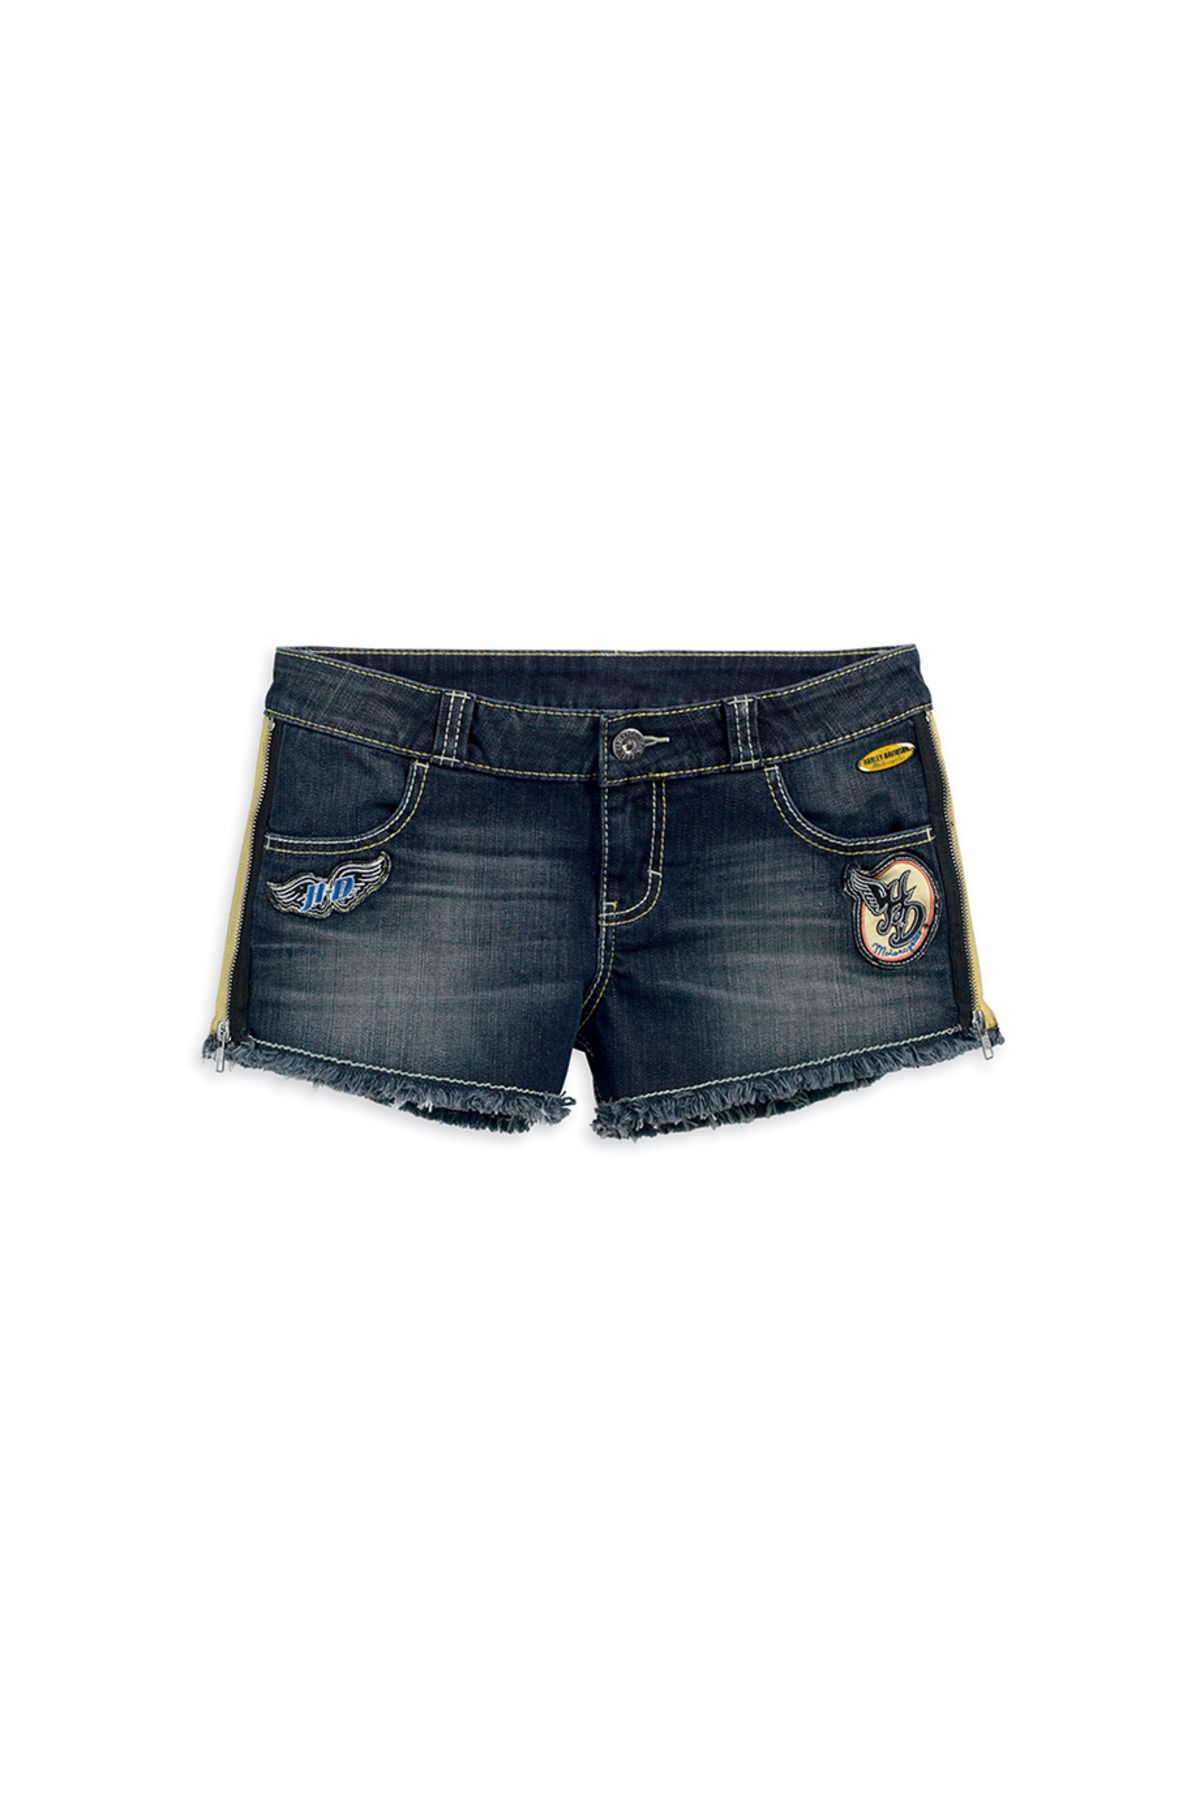 Harley Davidson Harley-davidson Jean-shorts W Patches,bl Kadın Şort